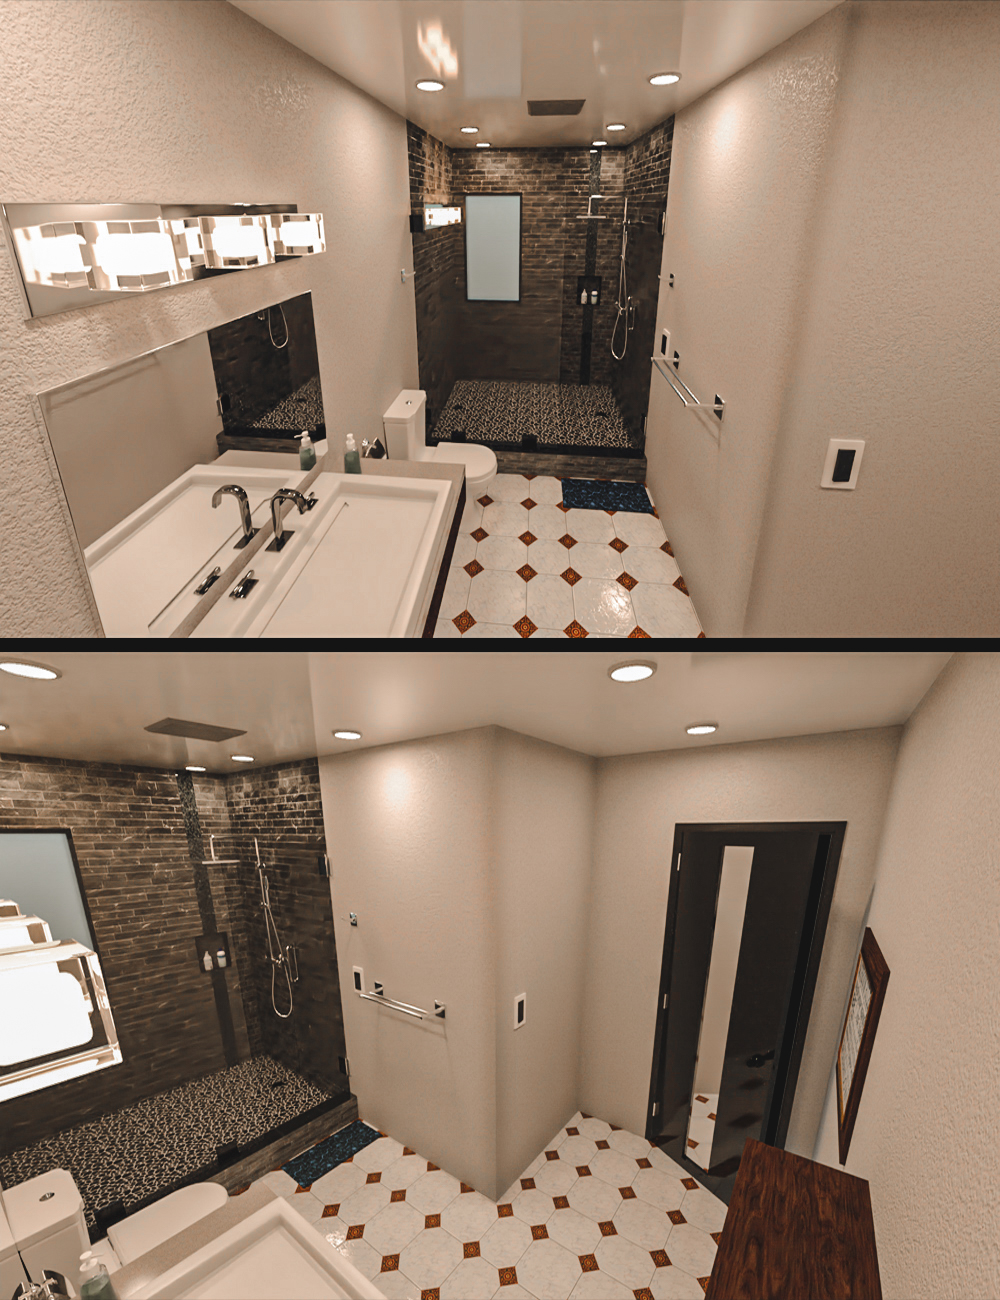 Modern Tidy Bathroom by: Tesla3dCorp, 3D Models by Daz 3D